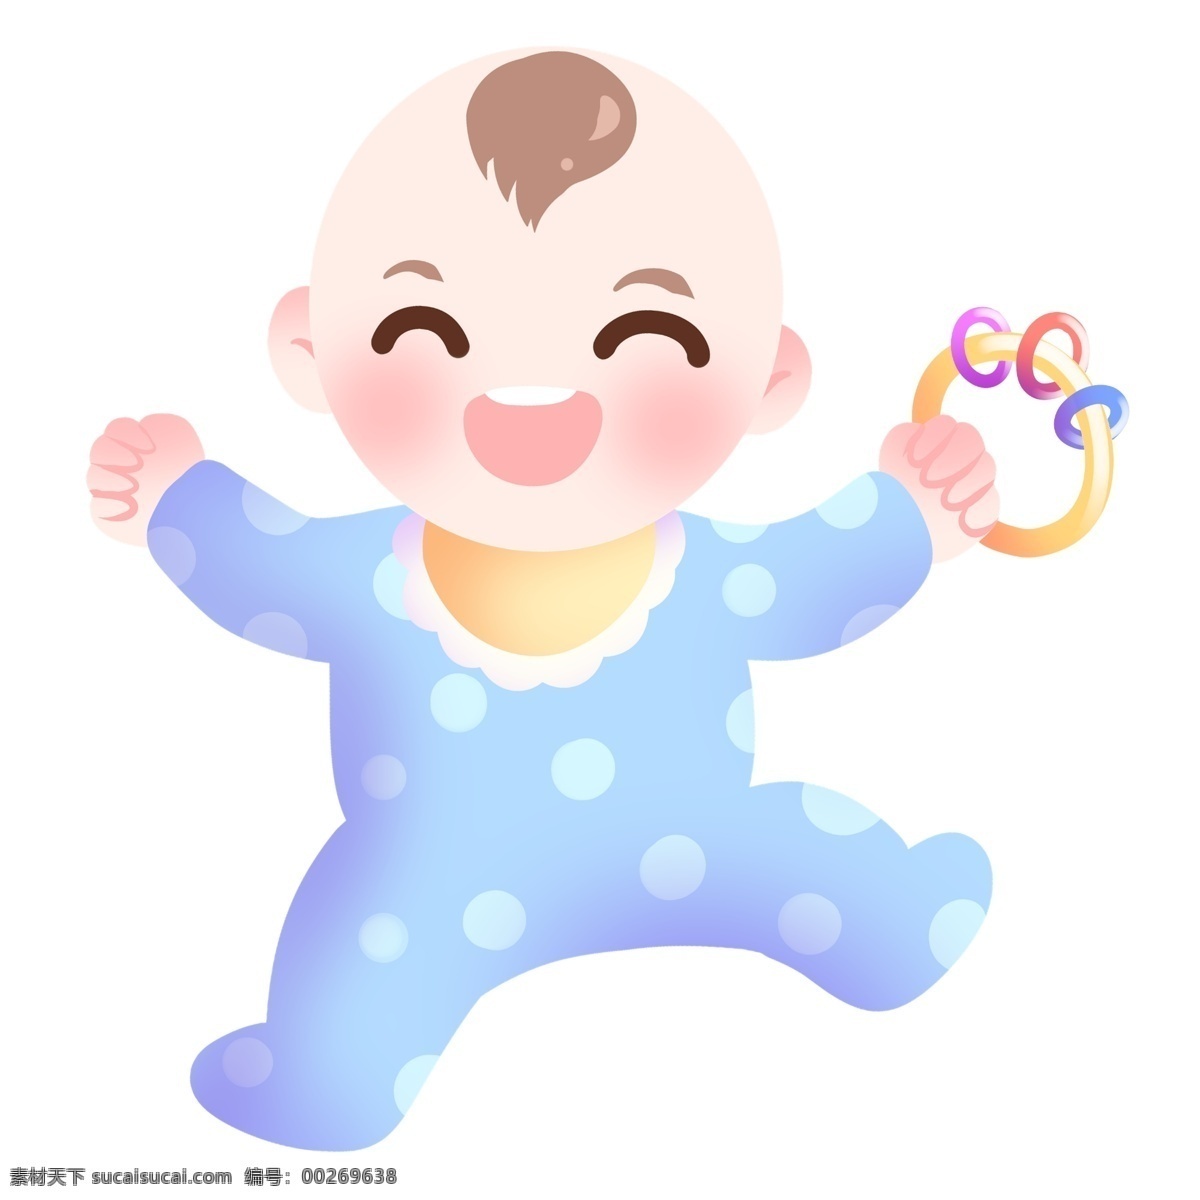 开心 玩耍 婴儿 插画 开心的婴儿 卡通插画 宝贝插画 婴儿插画 可爱的宝贝 微笑的宝贝 玩耍的宝贝